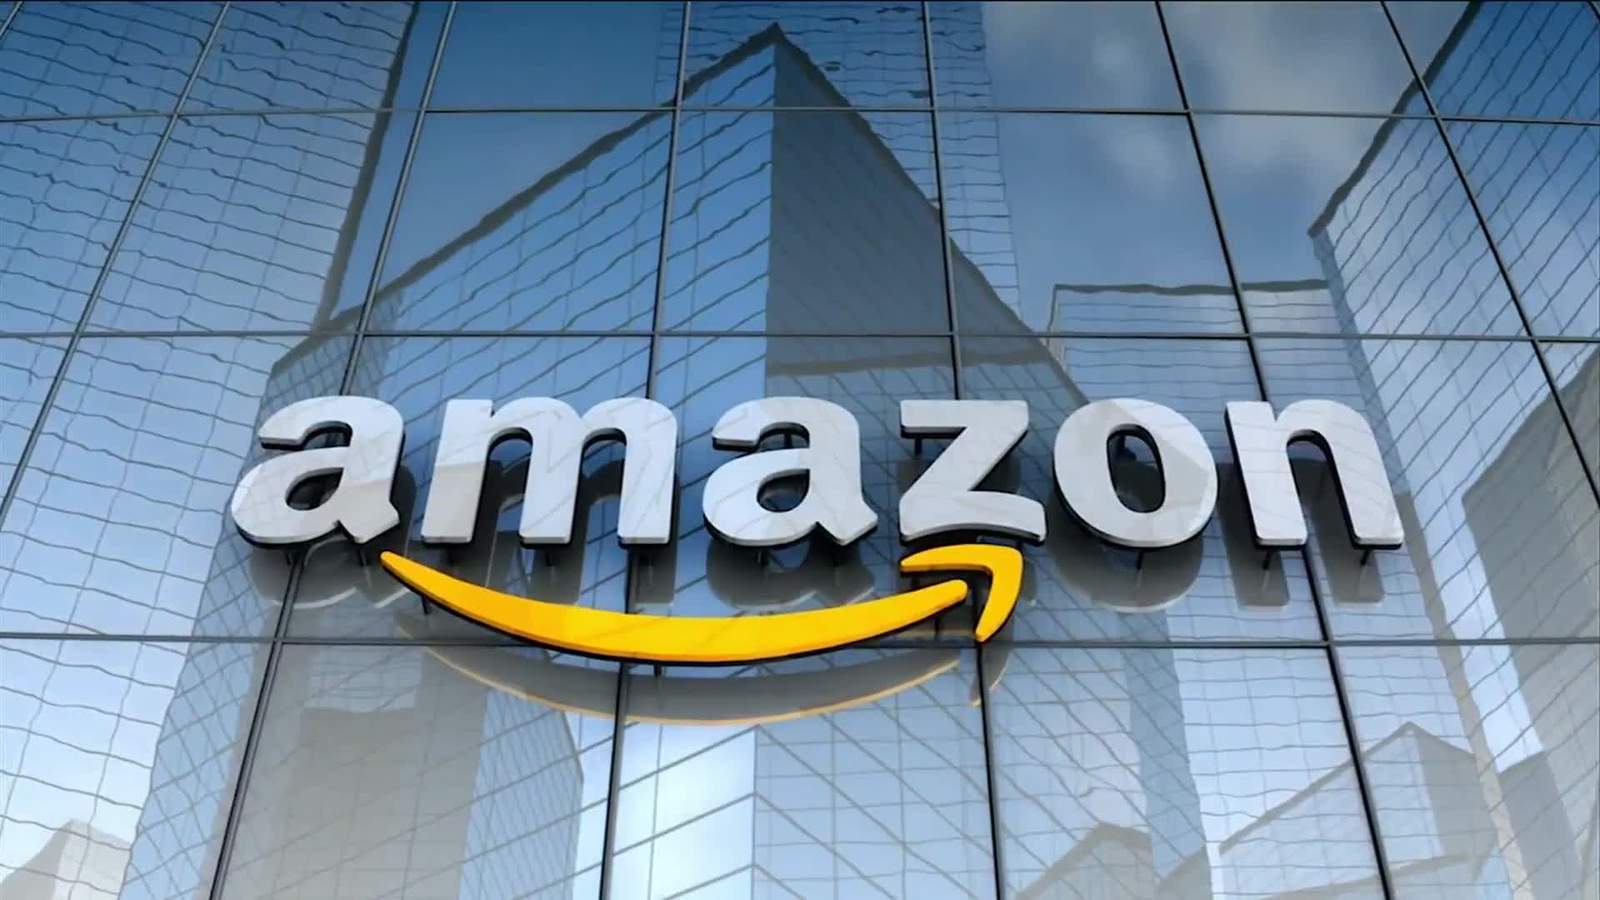 Amazon 20 bine yakın çalışanını işten çıkarıyor